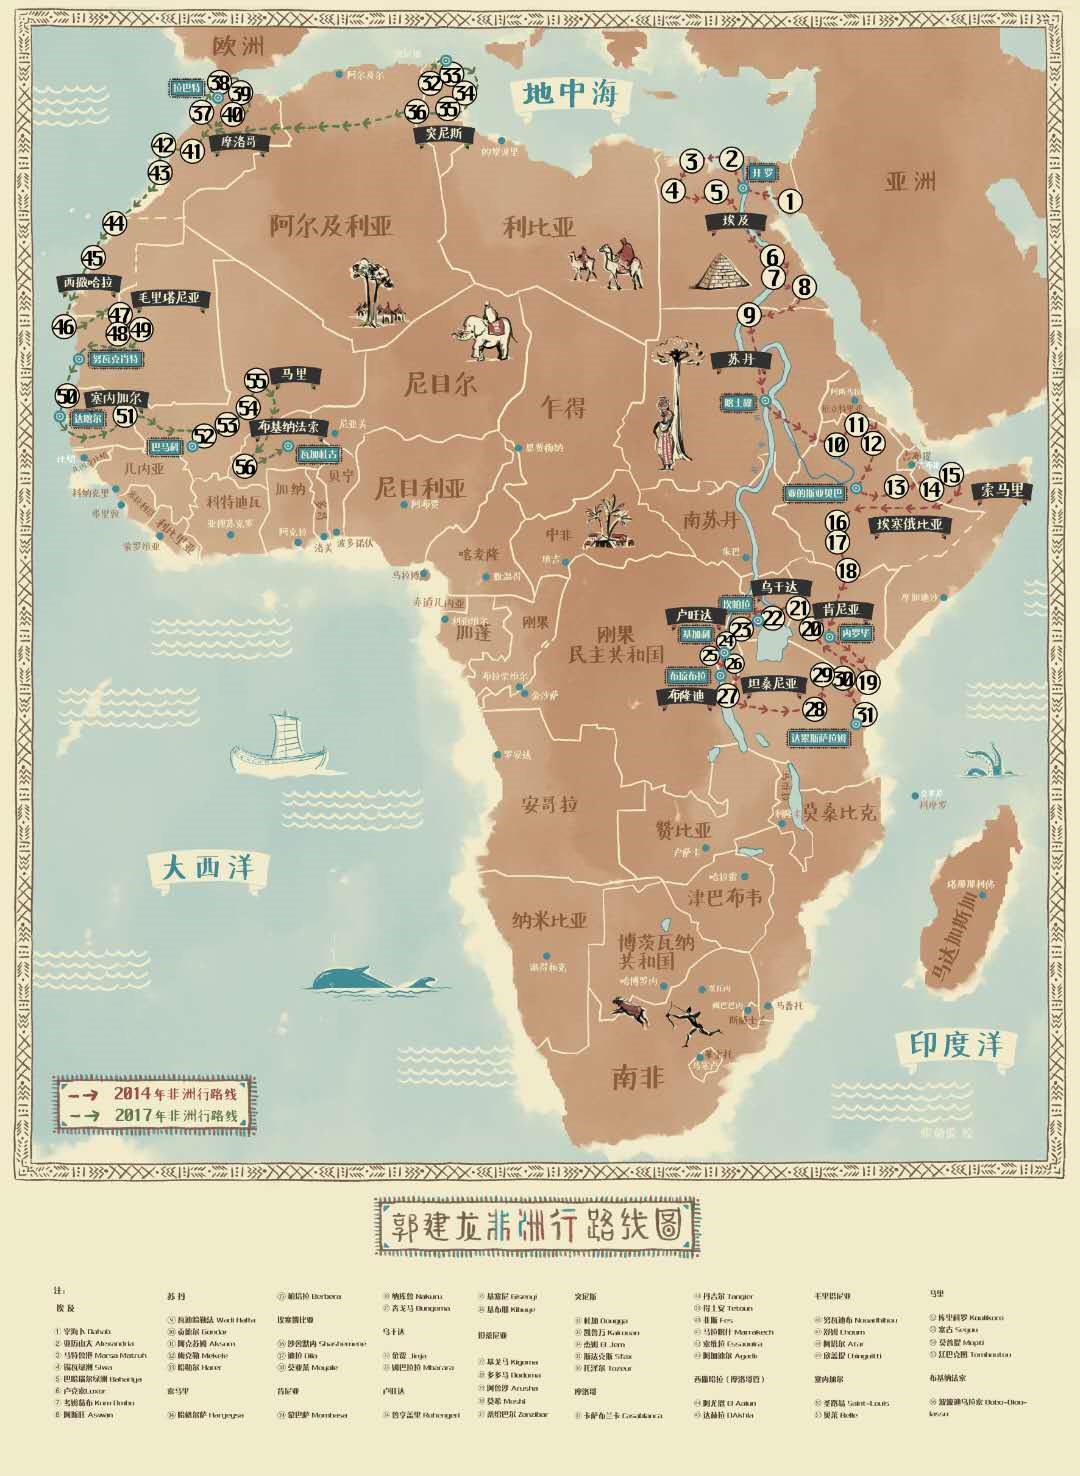 非洲地图_非洲地图中文版(2)|非洲地图_非洲地图中文版(2)全图高清版大图片|旅途风景图片网|www.visacits.com